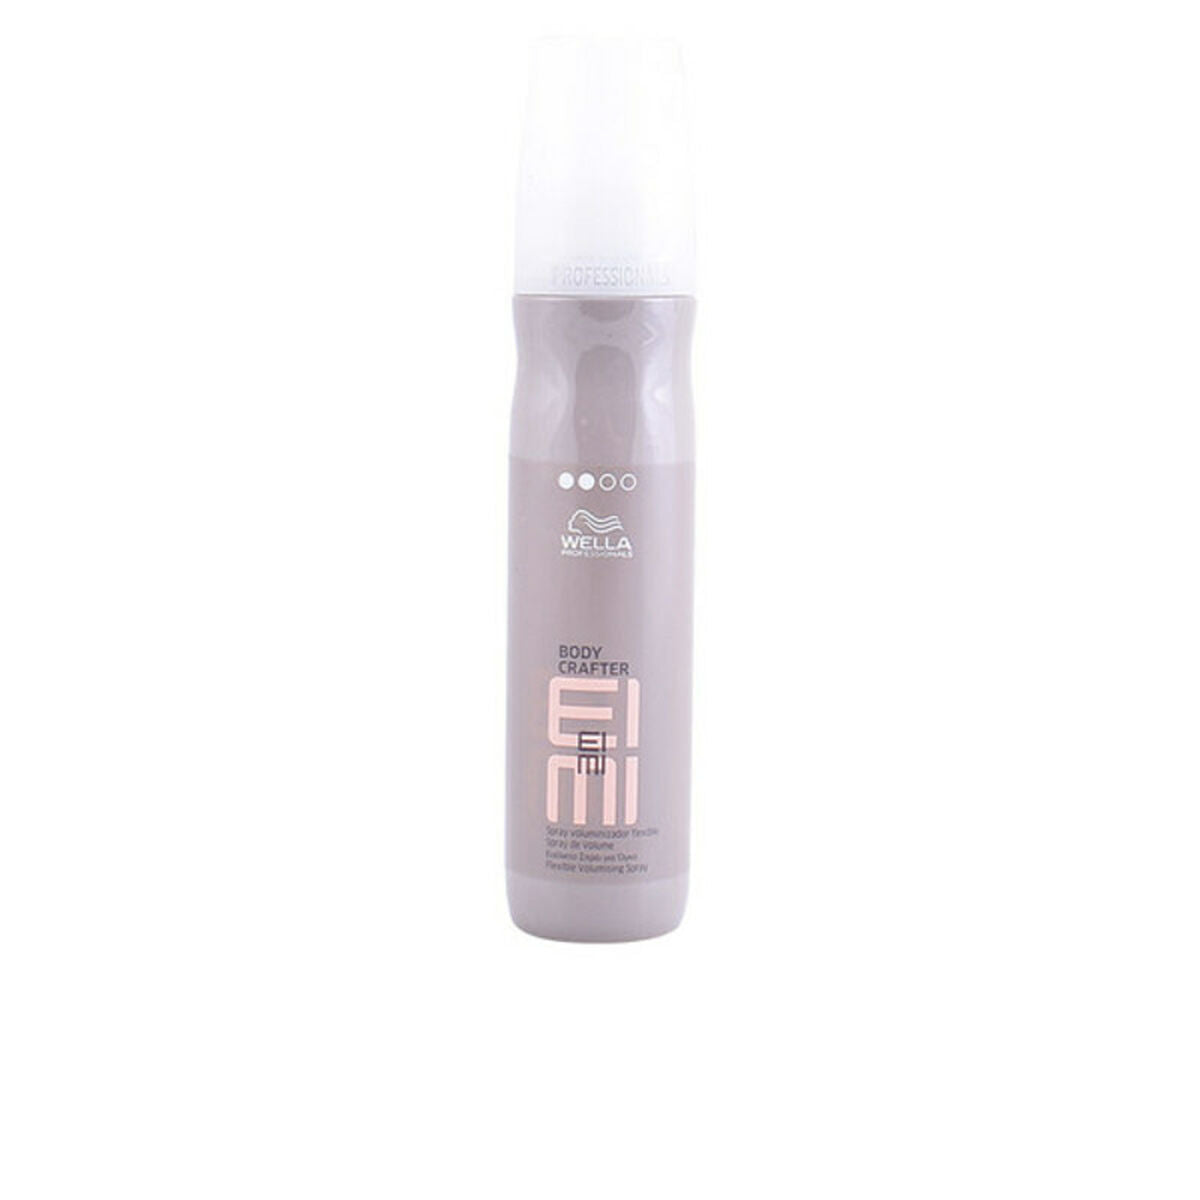 Spray de cheveux Eimi Crafter Wella 8.00561e + 12 150 ml